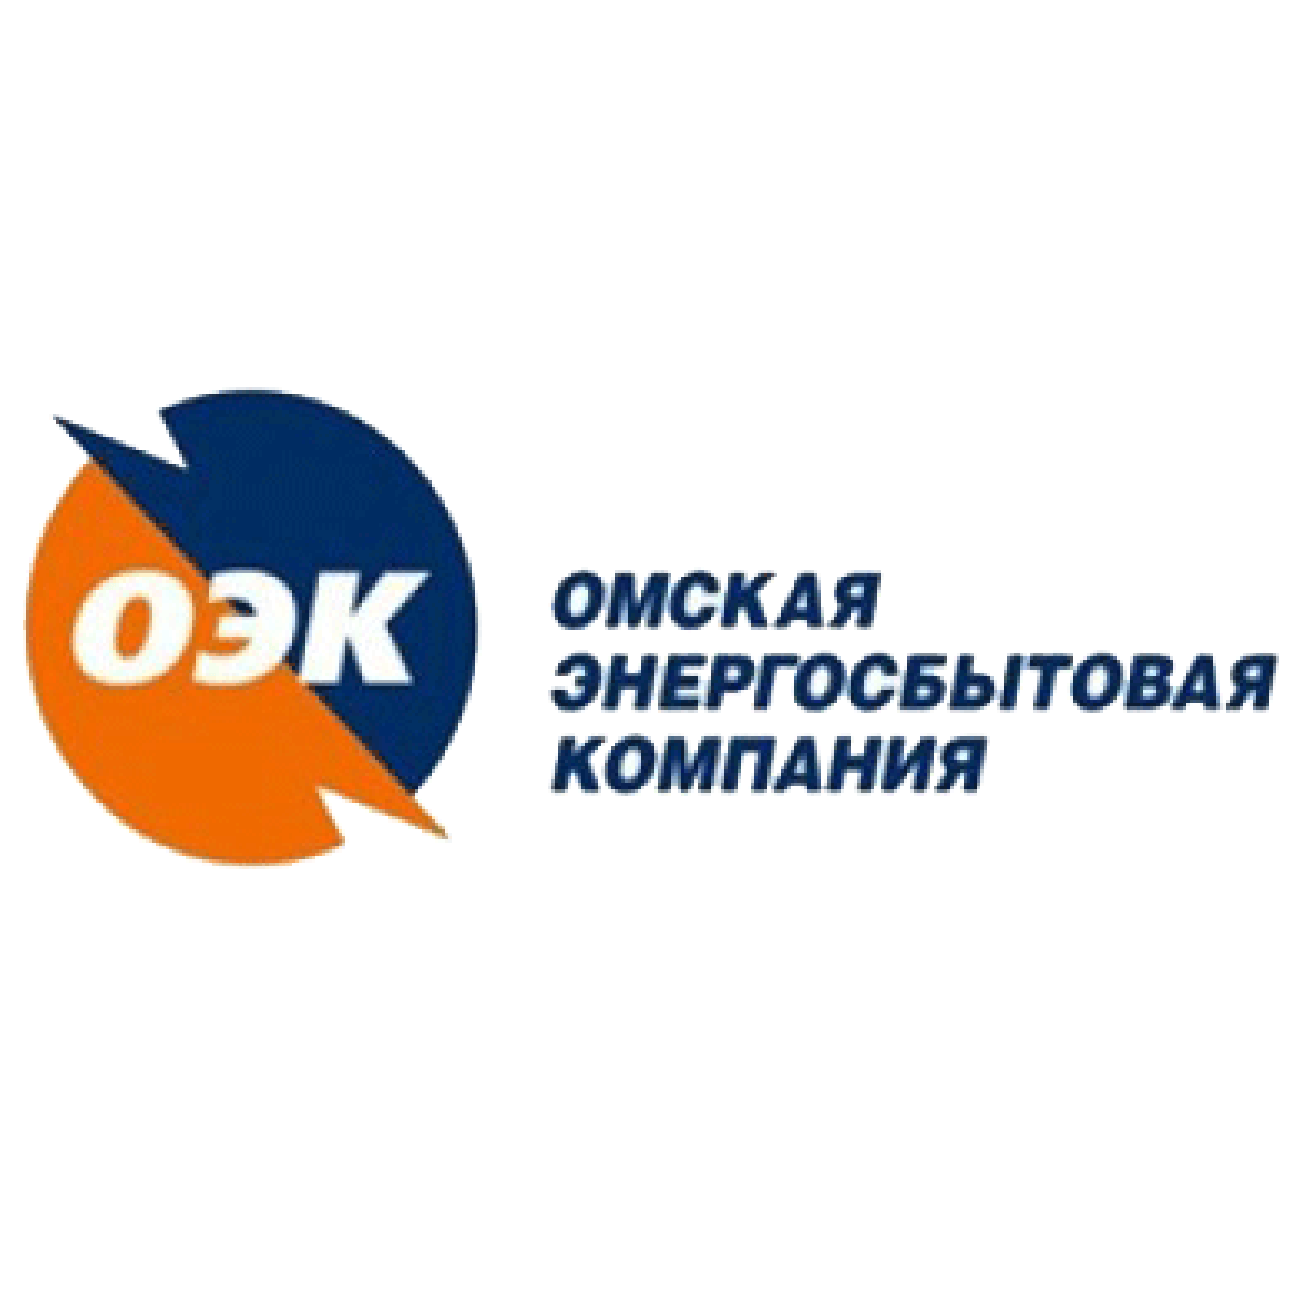 Сайт северная сбытовая. ОЭК Омская энергосбытовая компания. Логотип Омская энергосбытовая Омск. Энергосбытовая компания Омск личный. Объединенная энергетическая компания логотип.